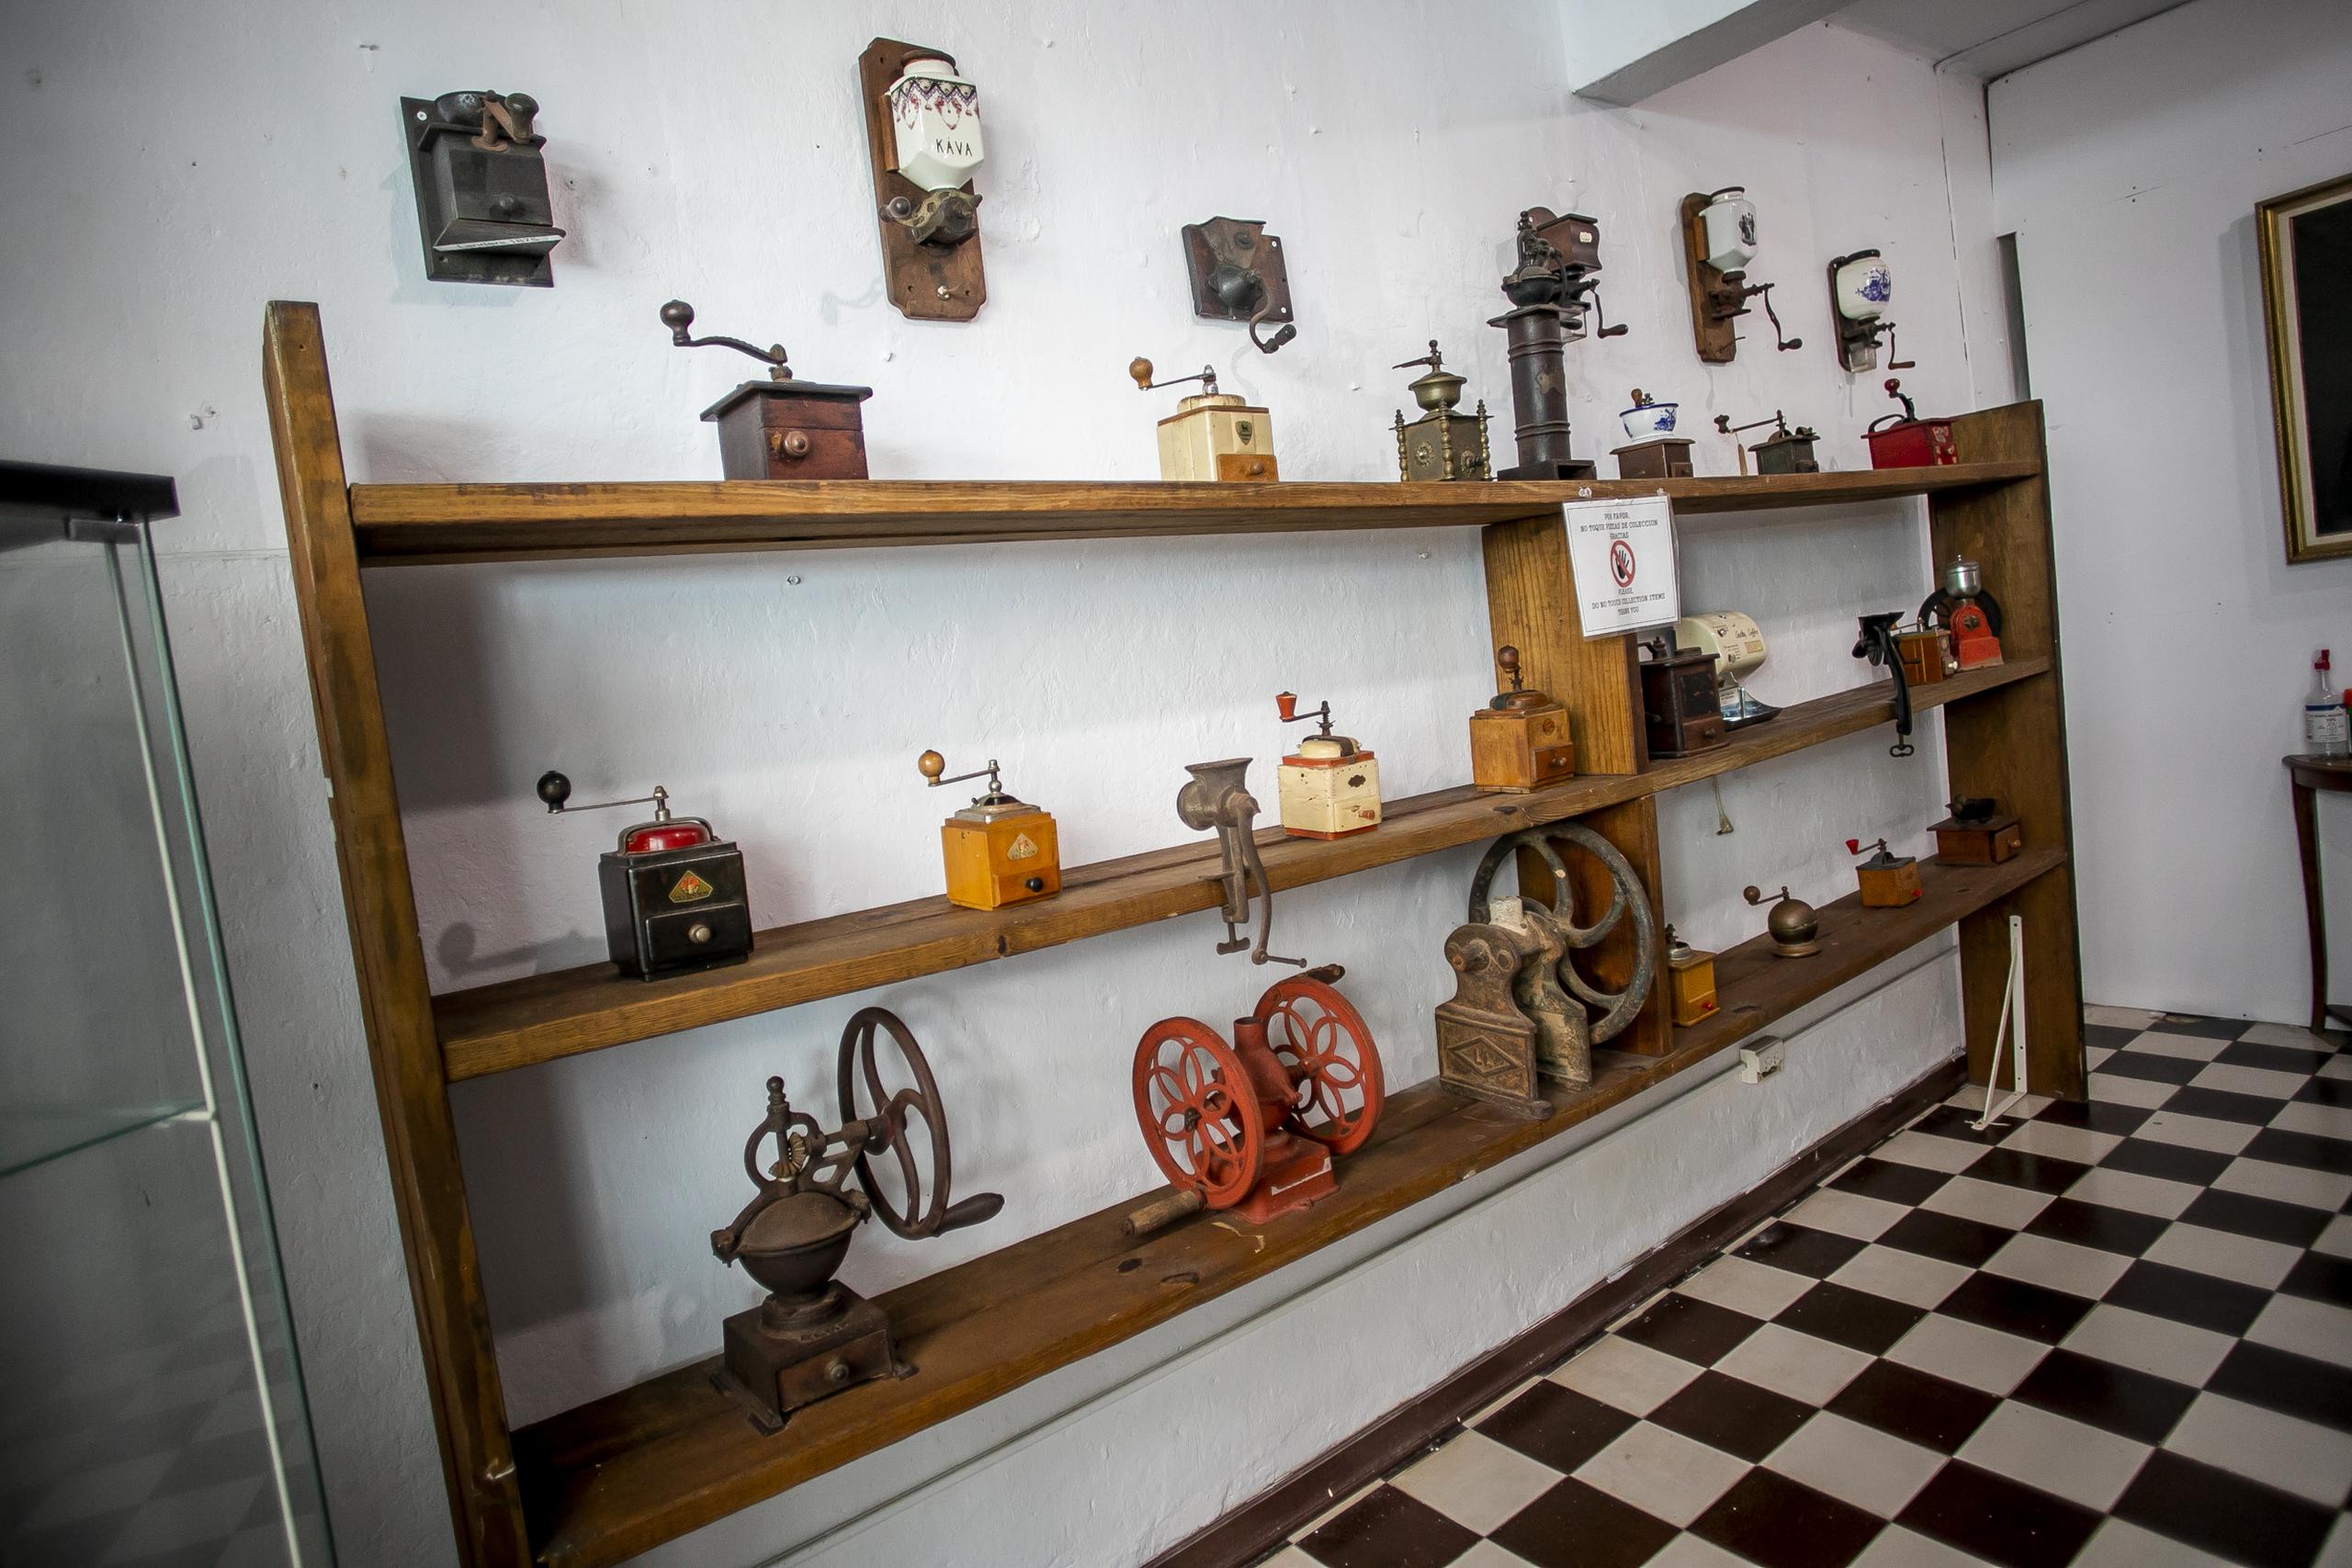 El museo cuenta con una coleccion de molinillos antiguos. 

